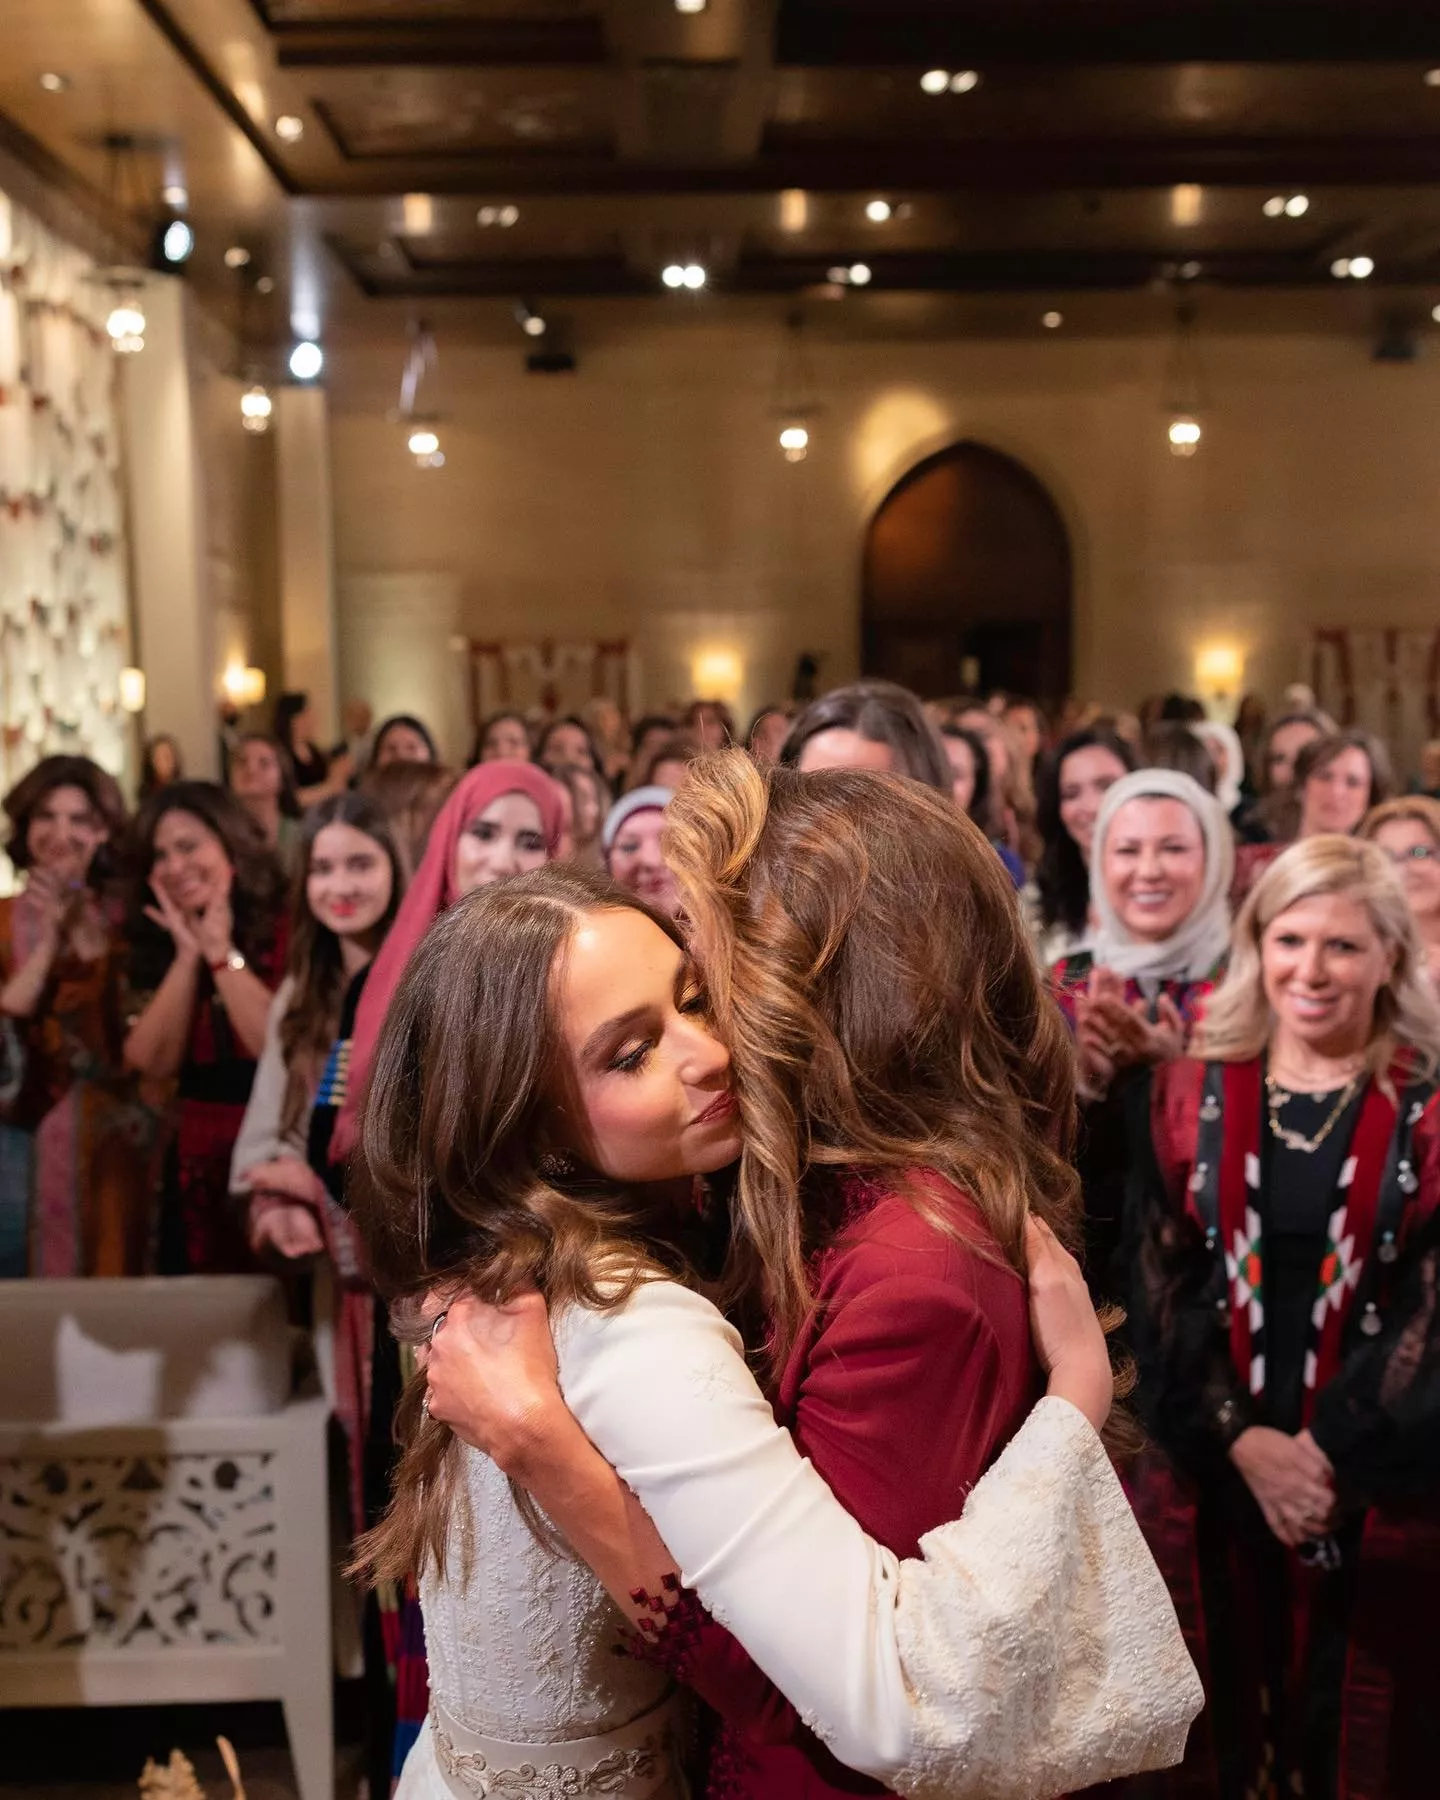 الملكة رانيا تفيض أناقة في حفل حناء ابنتها الأميرة إيمان